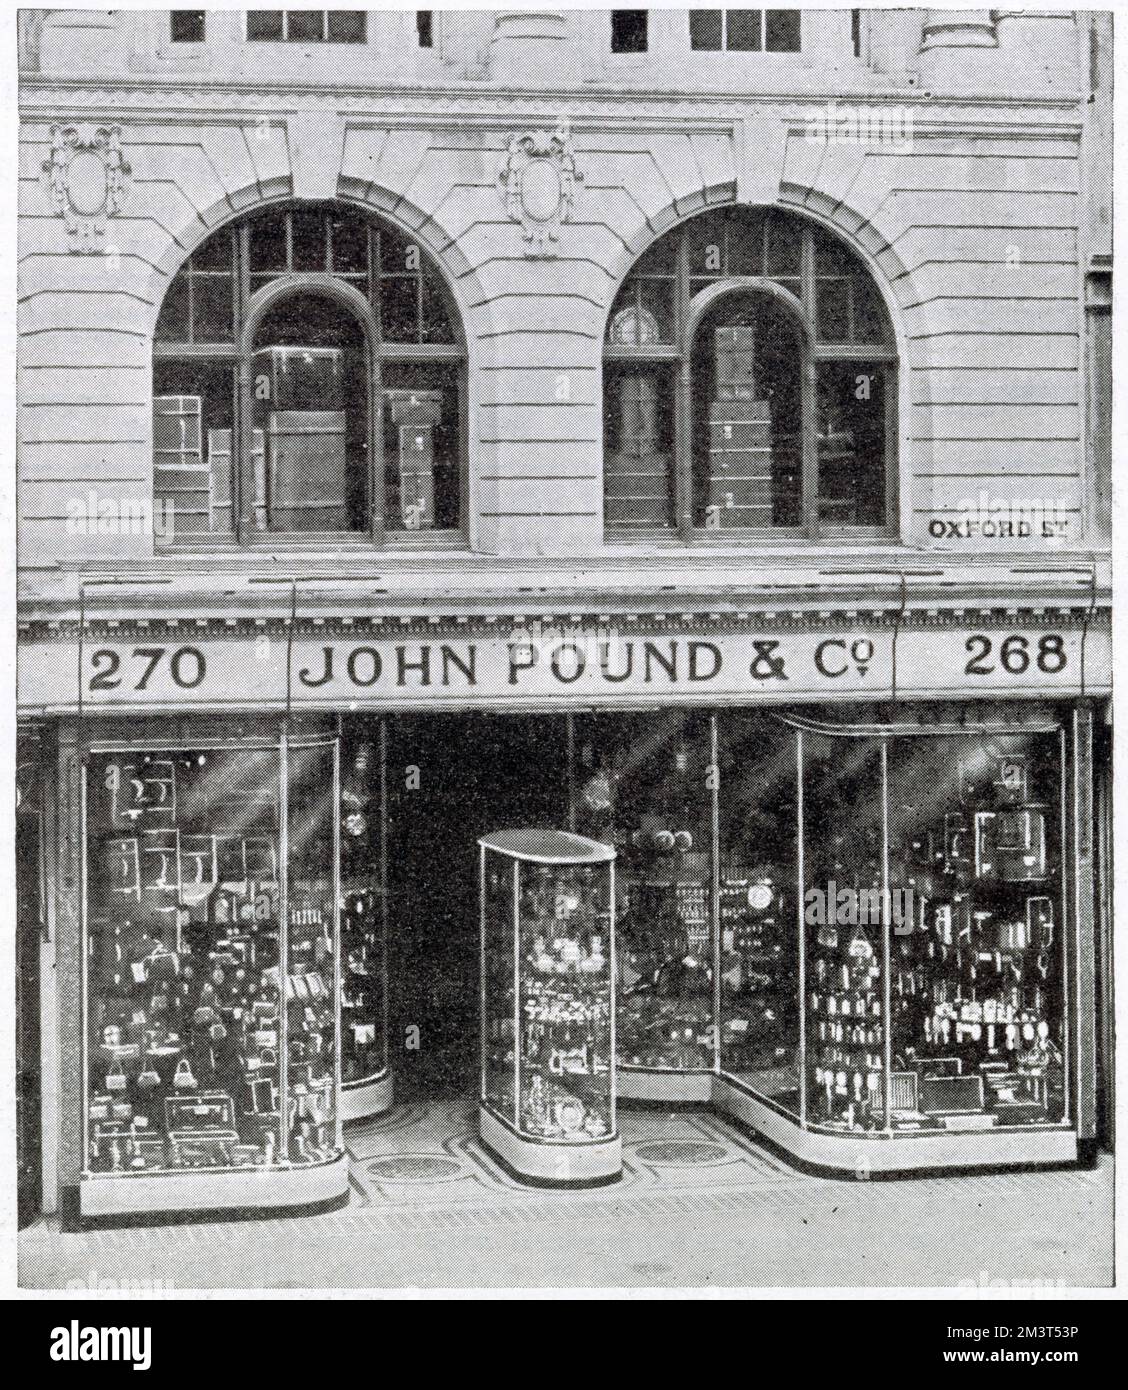 Il nuovo negozio West-End, John Pound & Co a Oxford Street. Vendita di articoli in pelle, valigie, posate, orologi e piatti elettroplaccati. Foto Stock